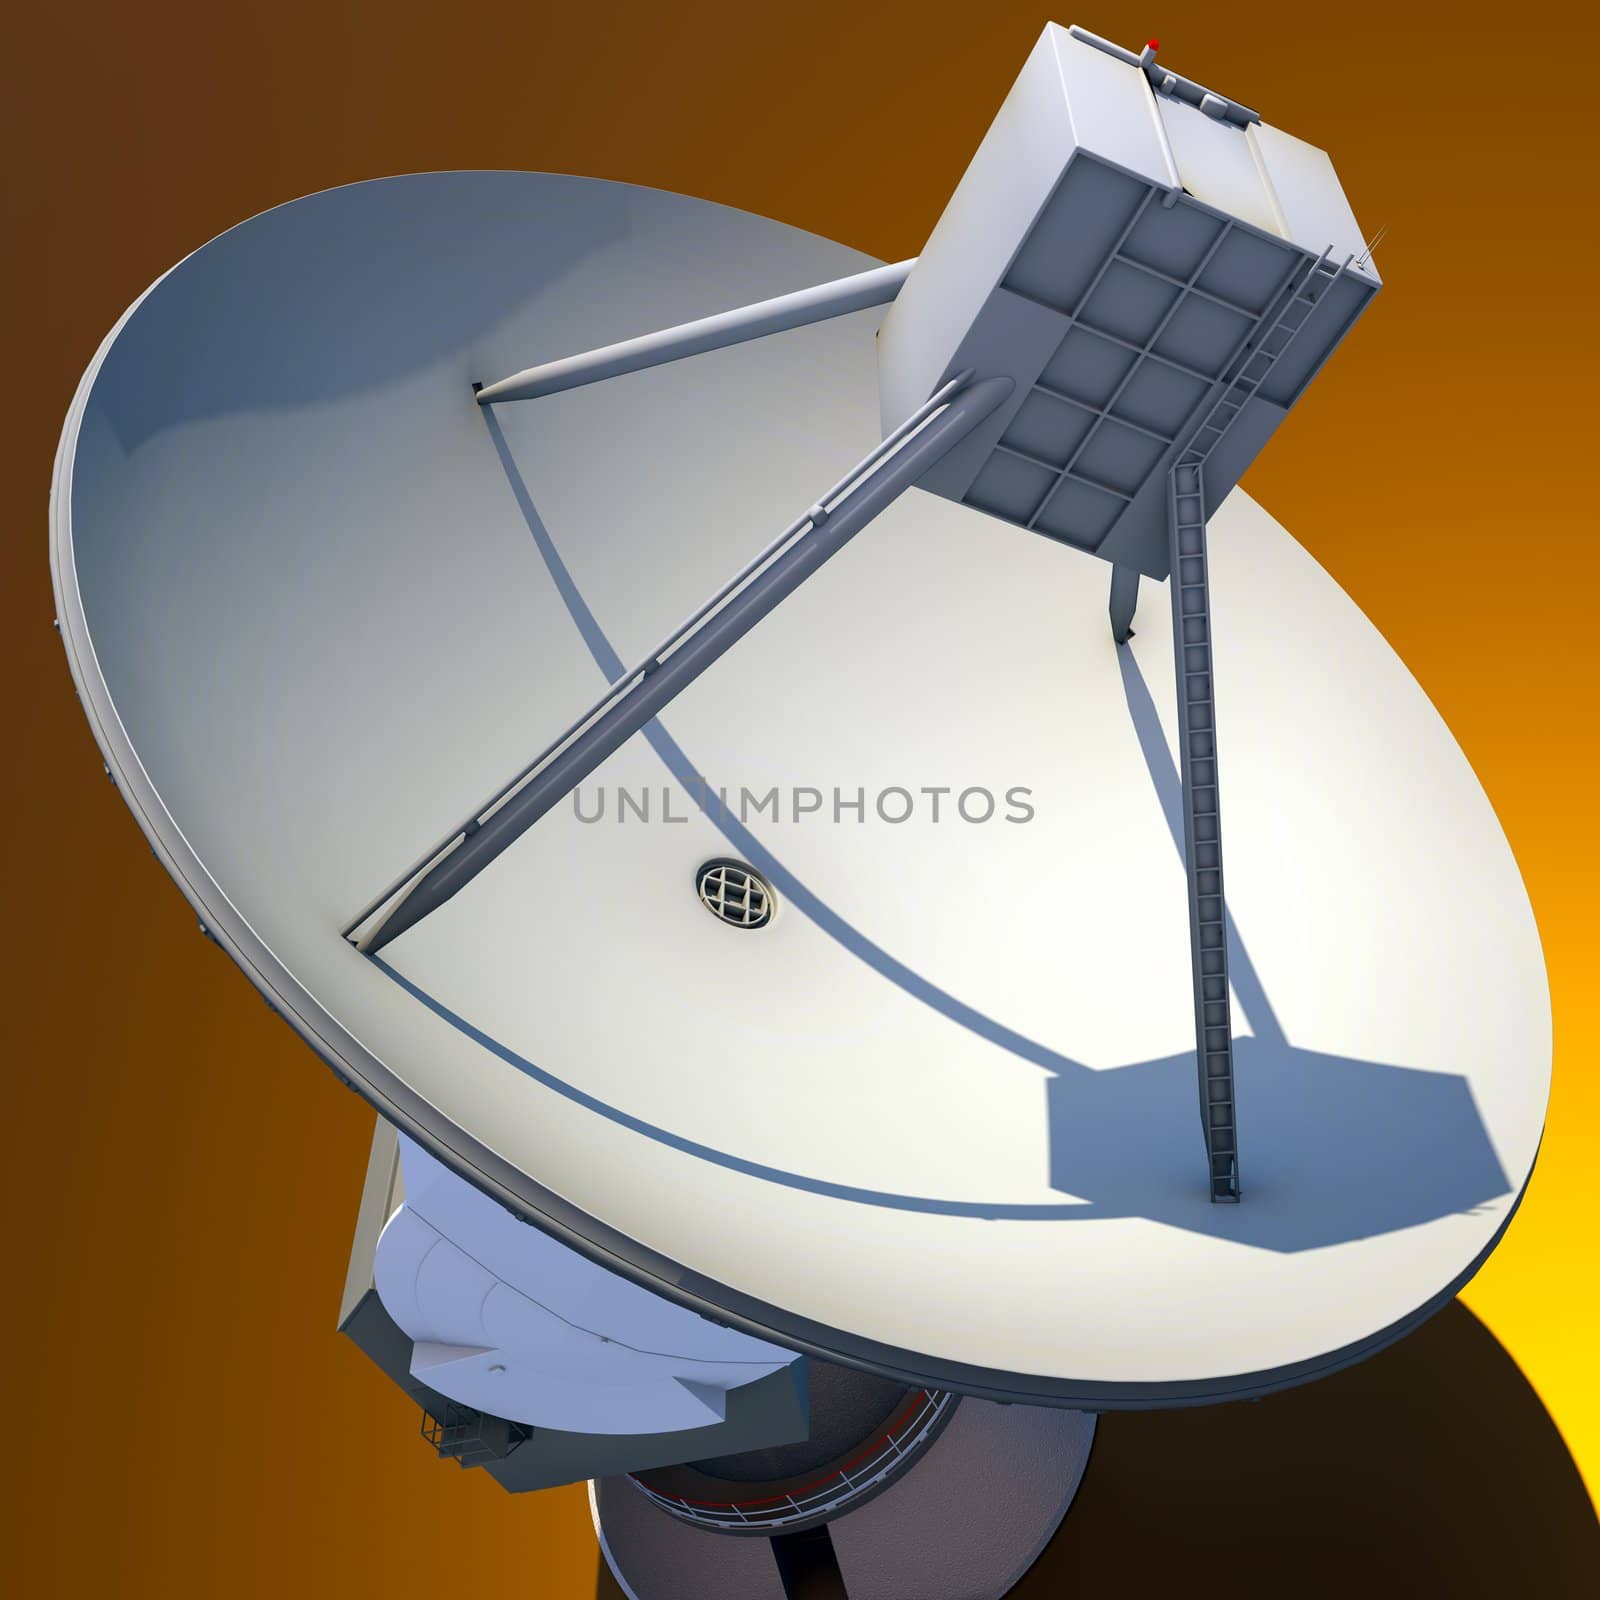 Large Array satellite dish antenna